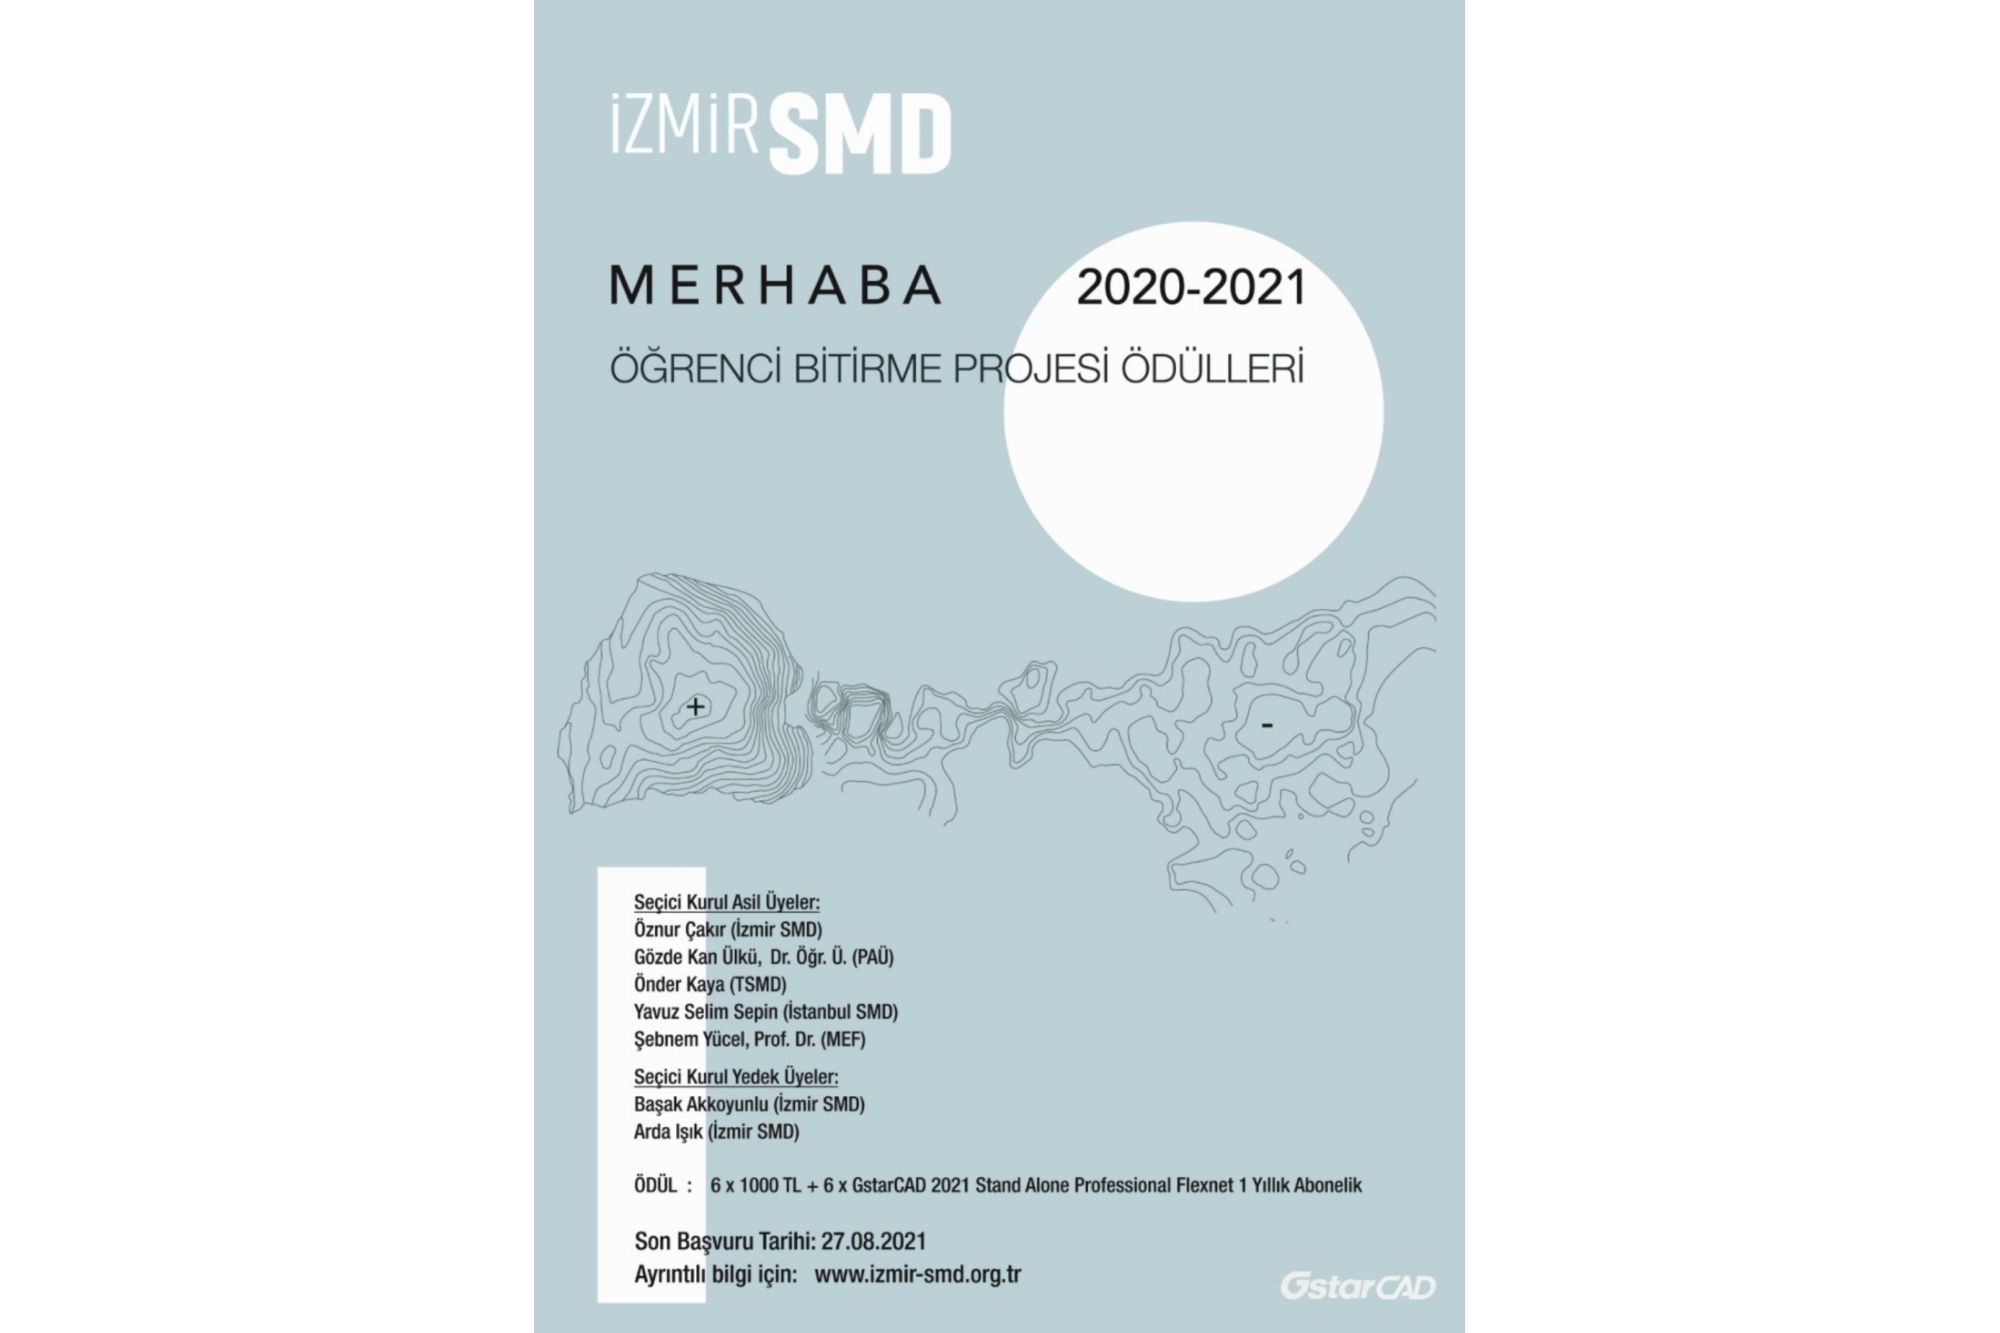 2020 - 2021 SMD Merhaba - Öğrenci Bitirme Projesi Ödülleri sonuçlandı!